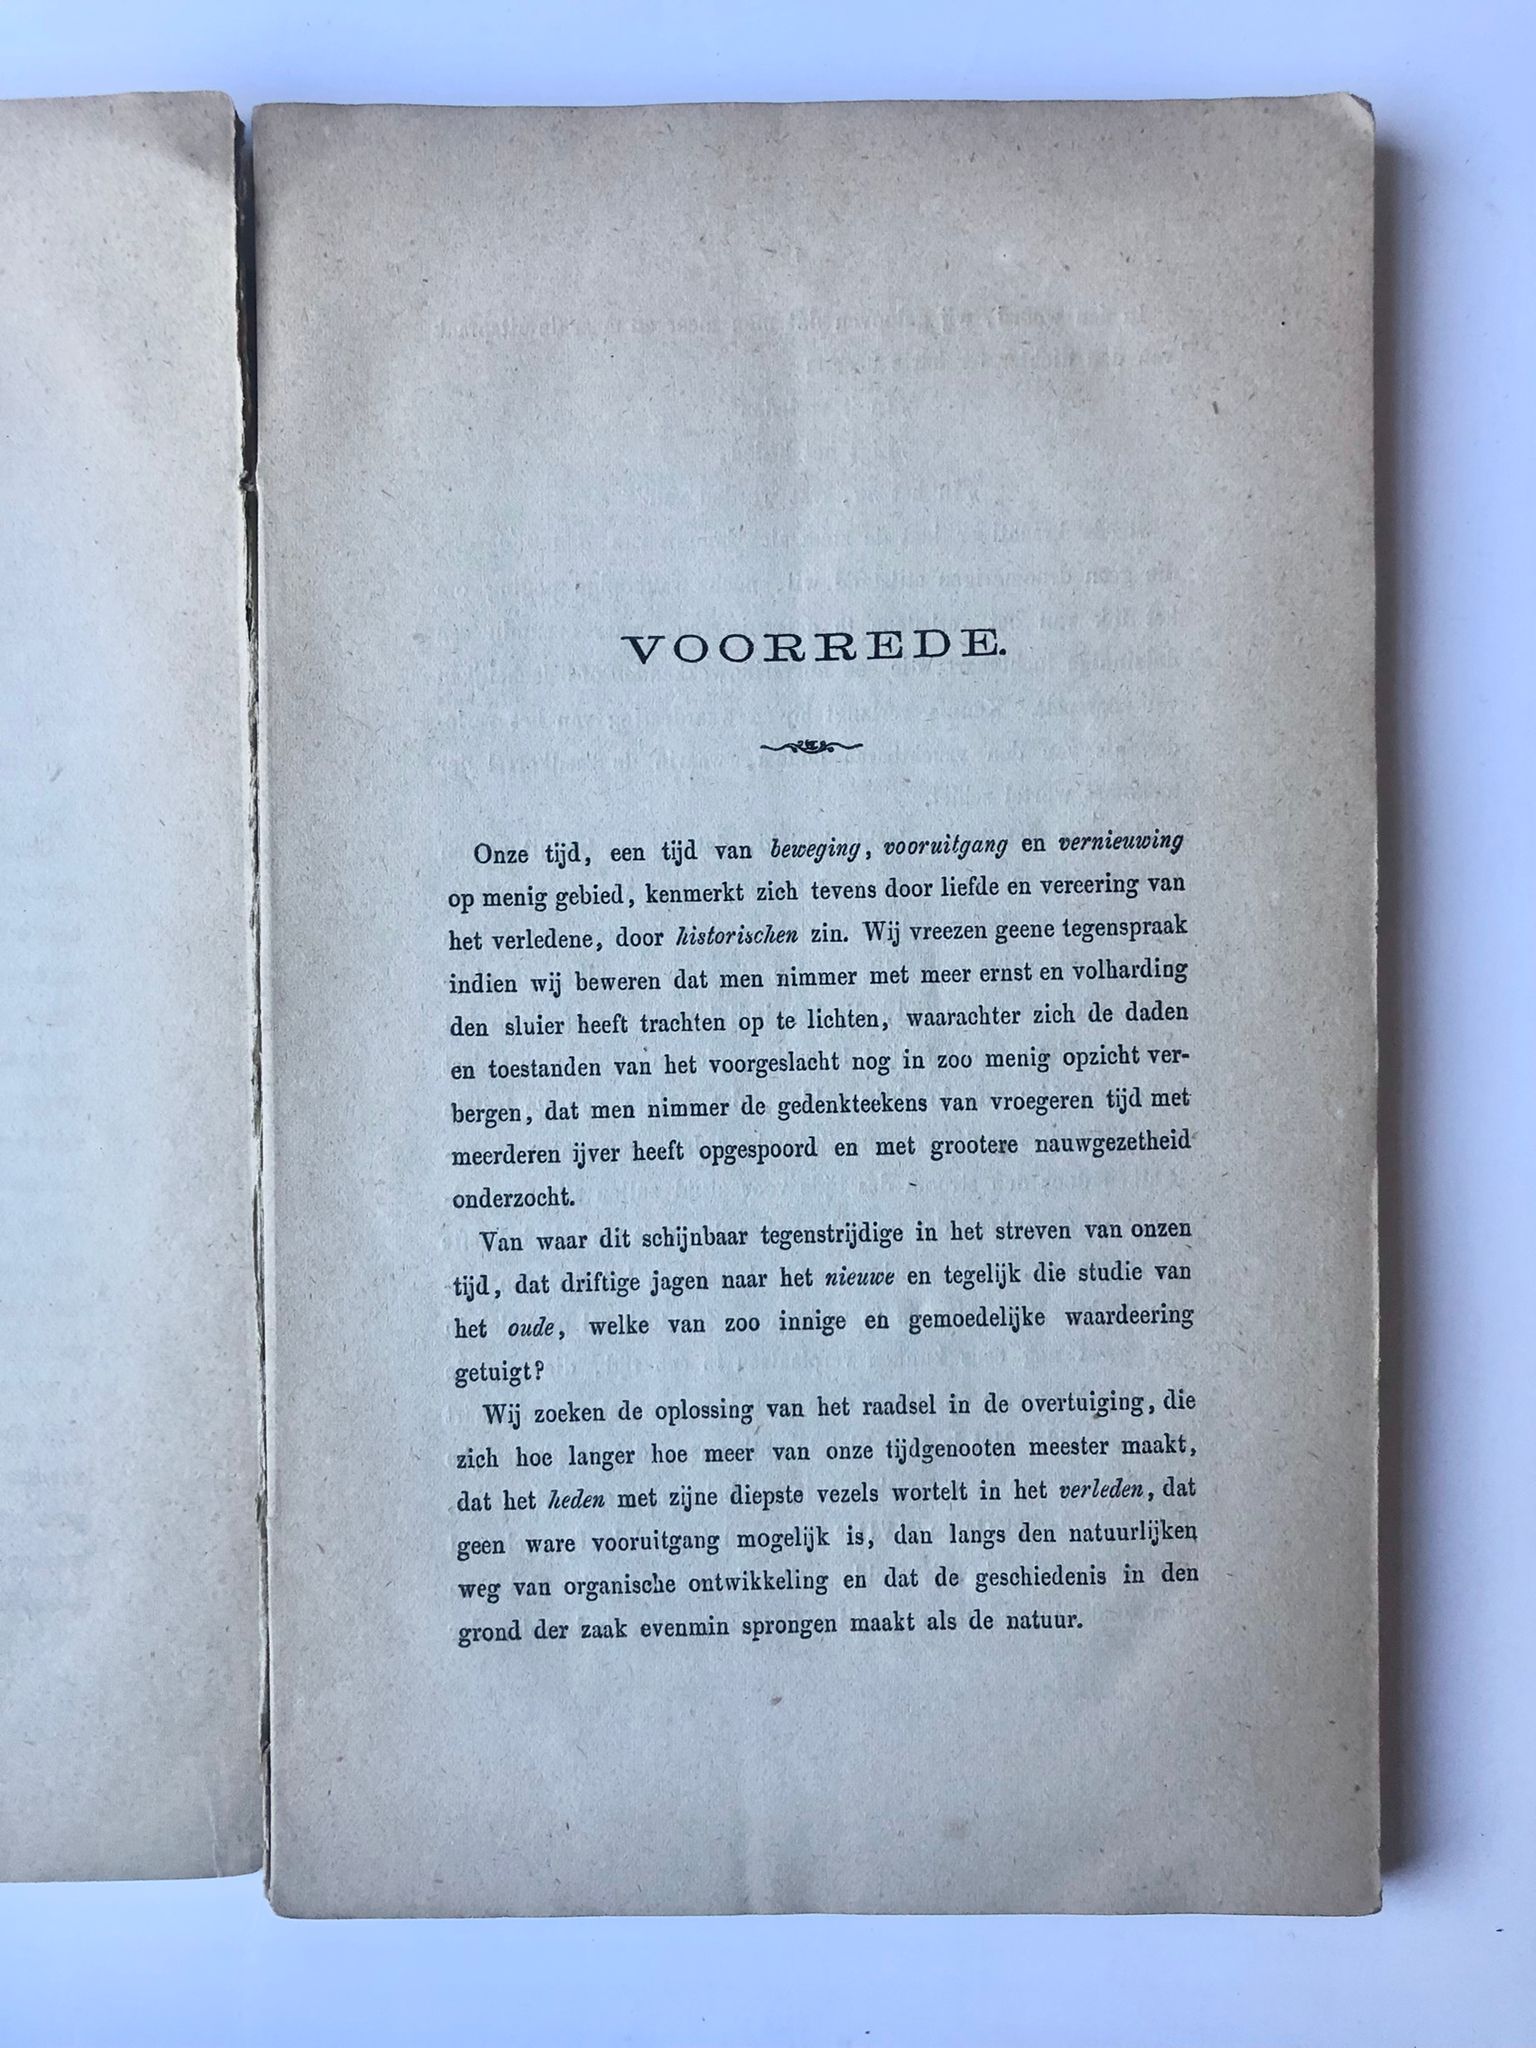 [Museum catalogue Zaandam, 1874] Catalogus van de Tentoonstelling van Zaanlandsche Oudheden en Merkwaardigheden. In het Gemeentehuis te Zaandam. (Augustus-September 1874.), Snelpersdruk T. de Jong, Westzaan [1874], 143 pp.